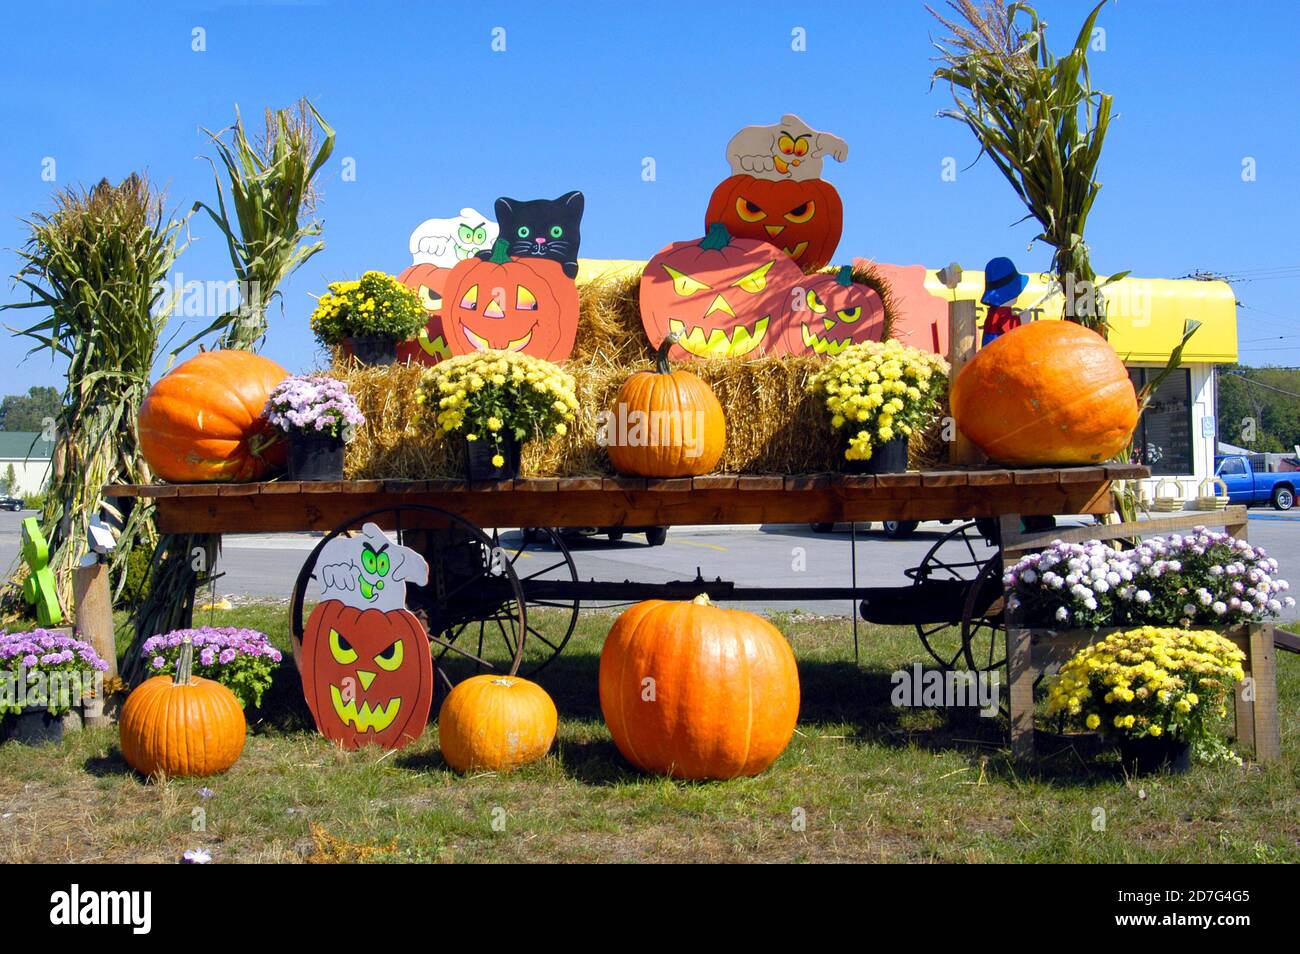 Michigan puesto de verduras del lado de la carretera con calabazas en exhibición para halloween Foto de stock